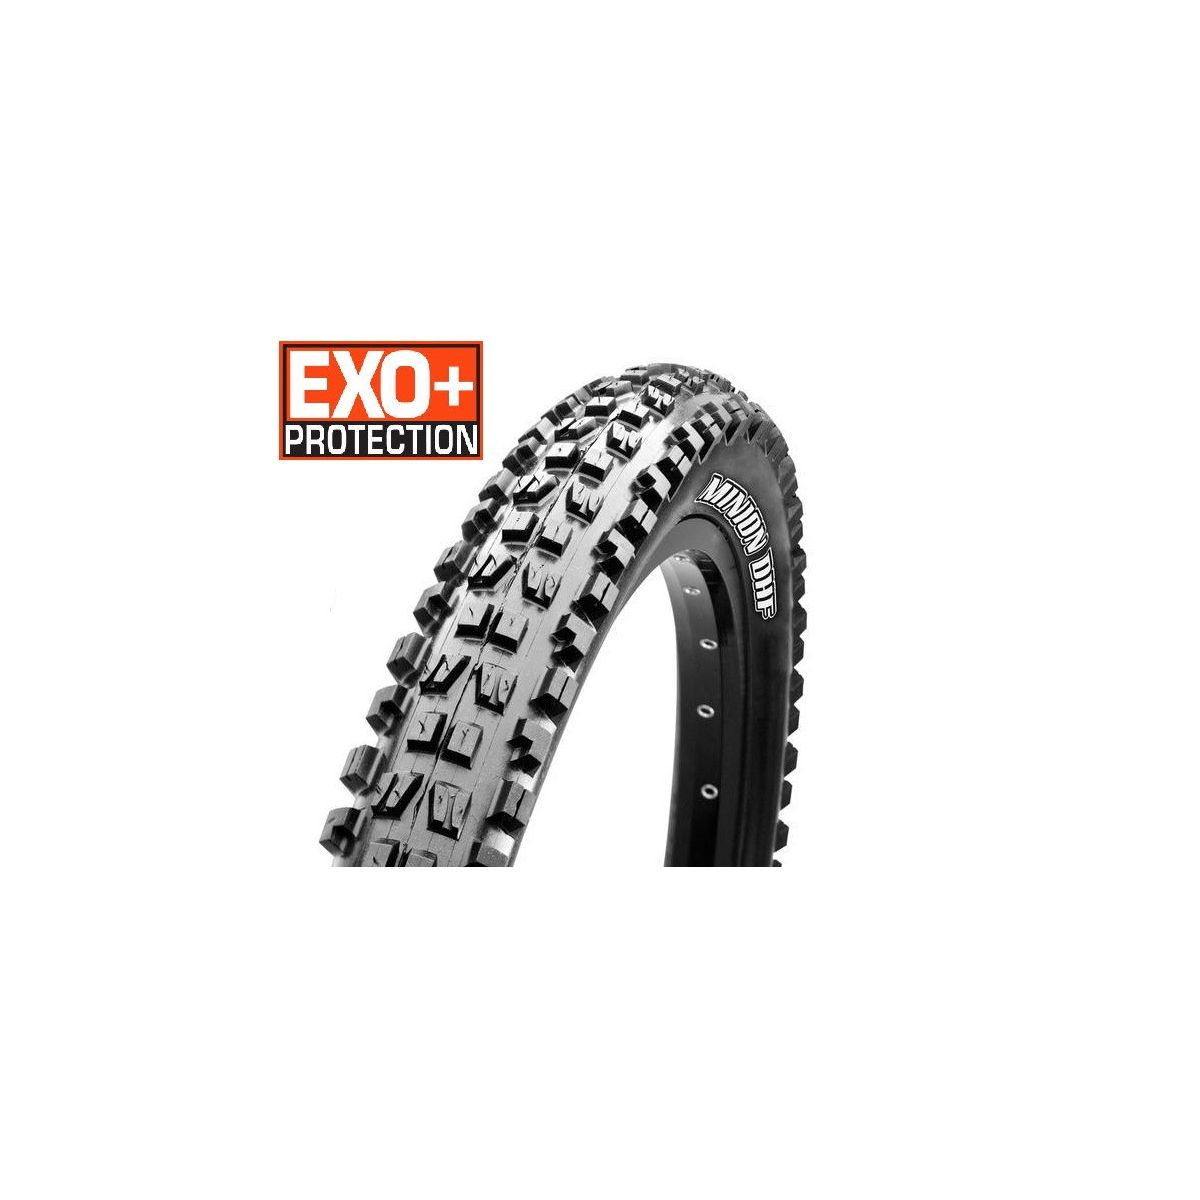 Maxxis Minion 27.5x2.80 3C, Exo+, TR | comprar neumáticos para bicicletas eléctricas de la marca Maxxis